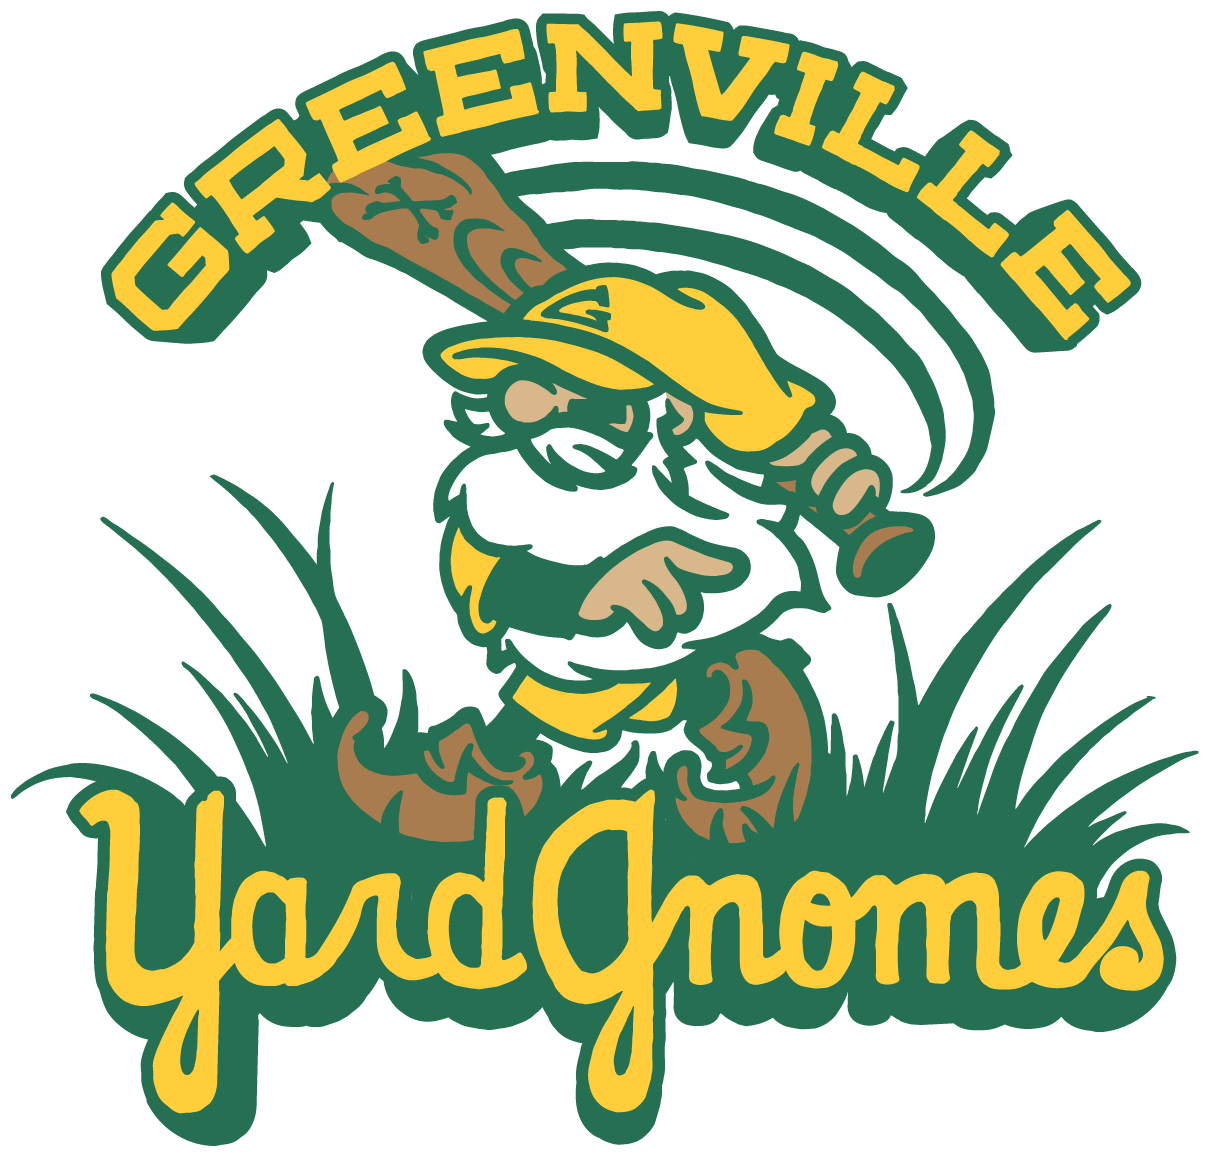 Greenville Yard Gnomes"